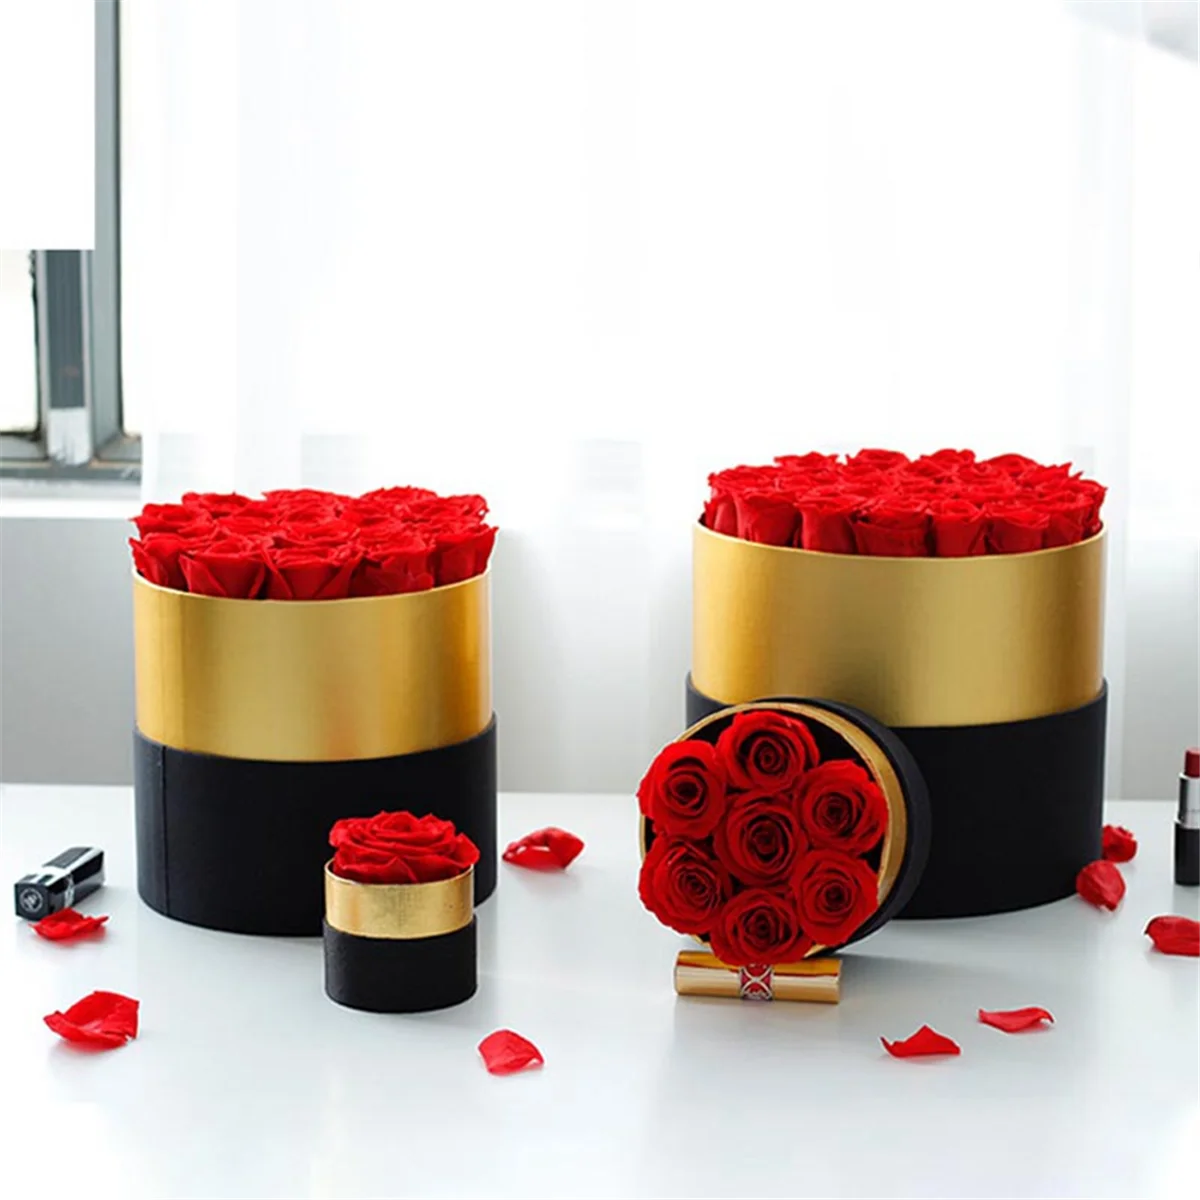 エターローズのロマンチックなレベル本物の花の贈り物のセット家の装飾バレンタインデー結婚式の贈り物妻